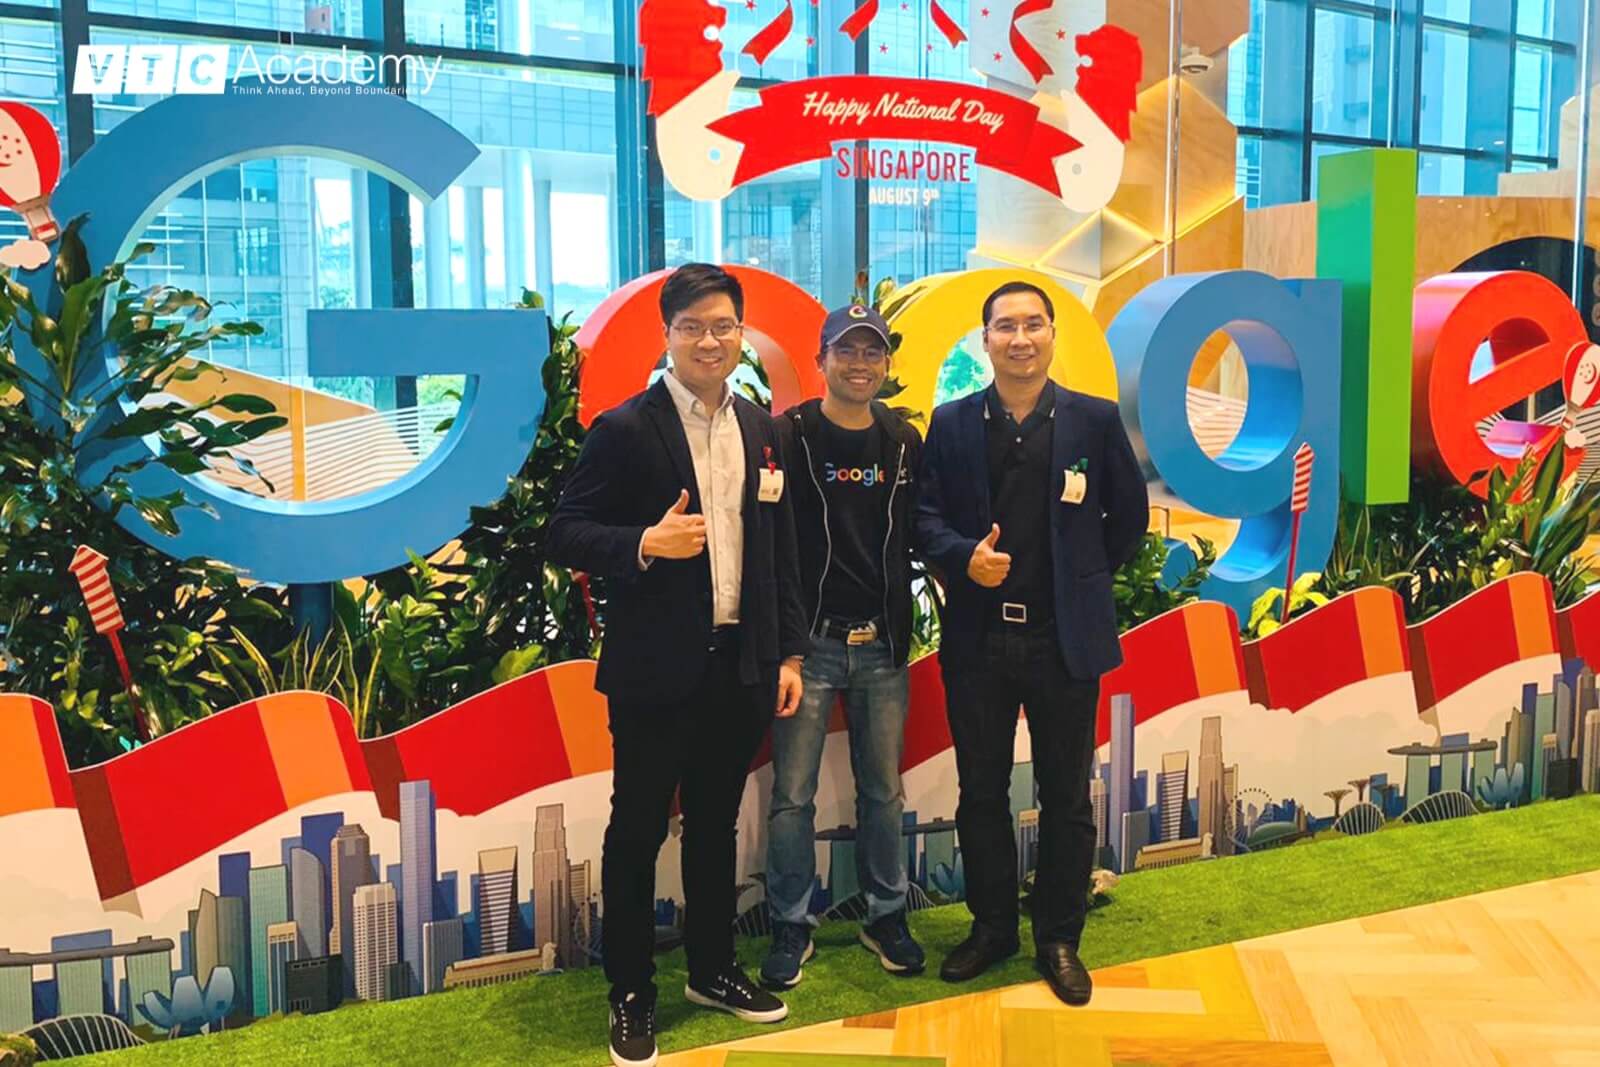 Review VTC Academy: VTC Academy's special visit to Google Singapore.